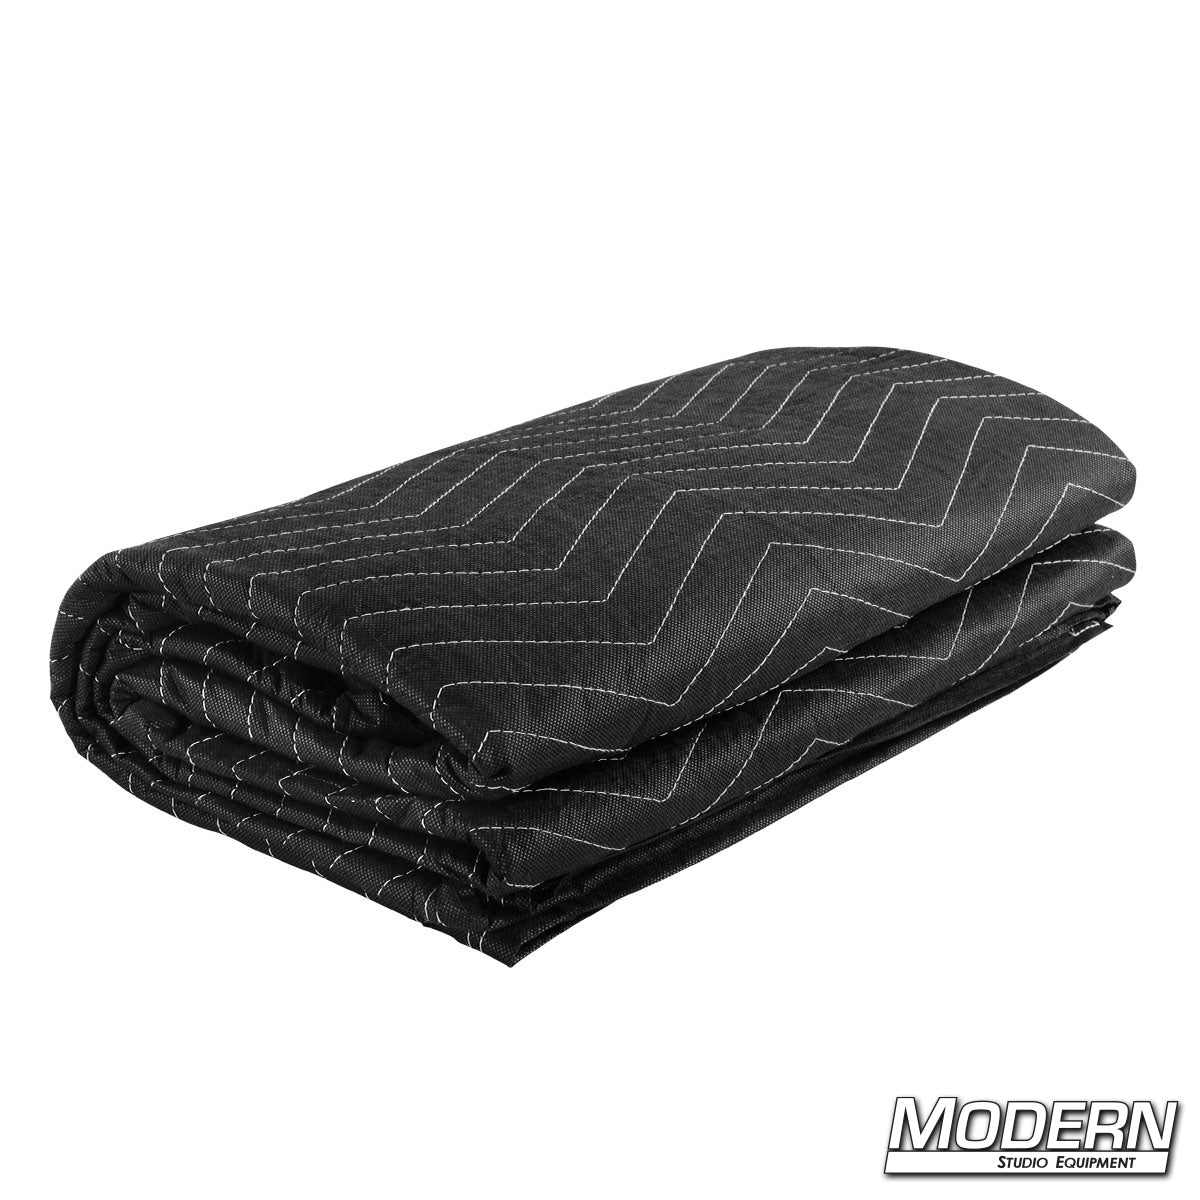 Furniture Blanket - Black / Black